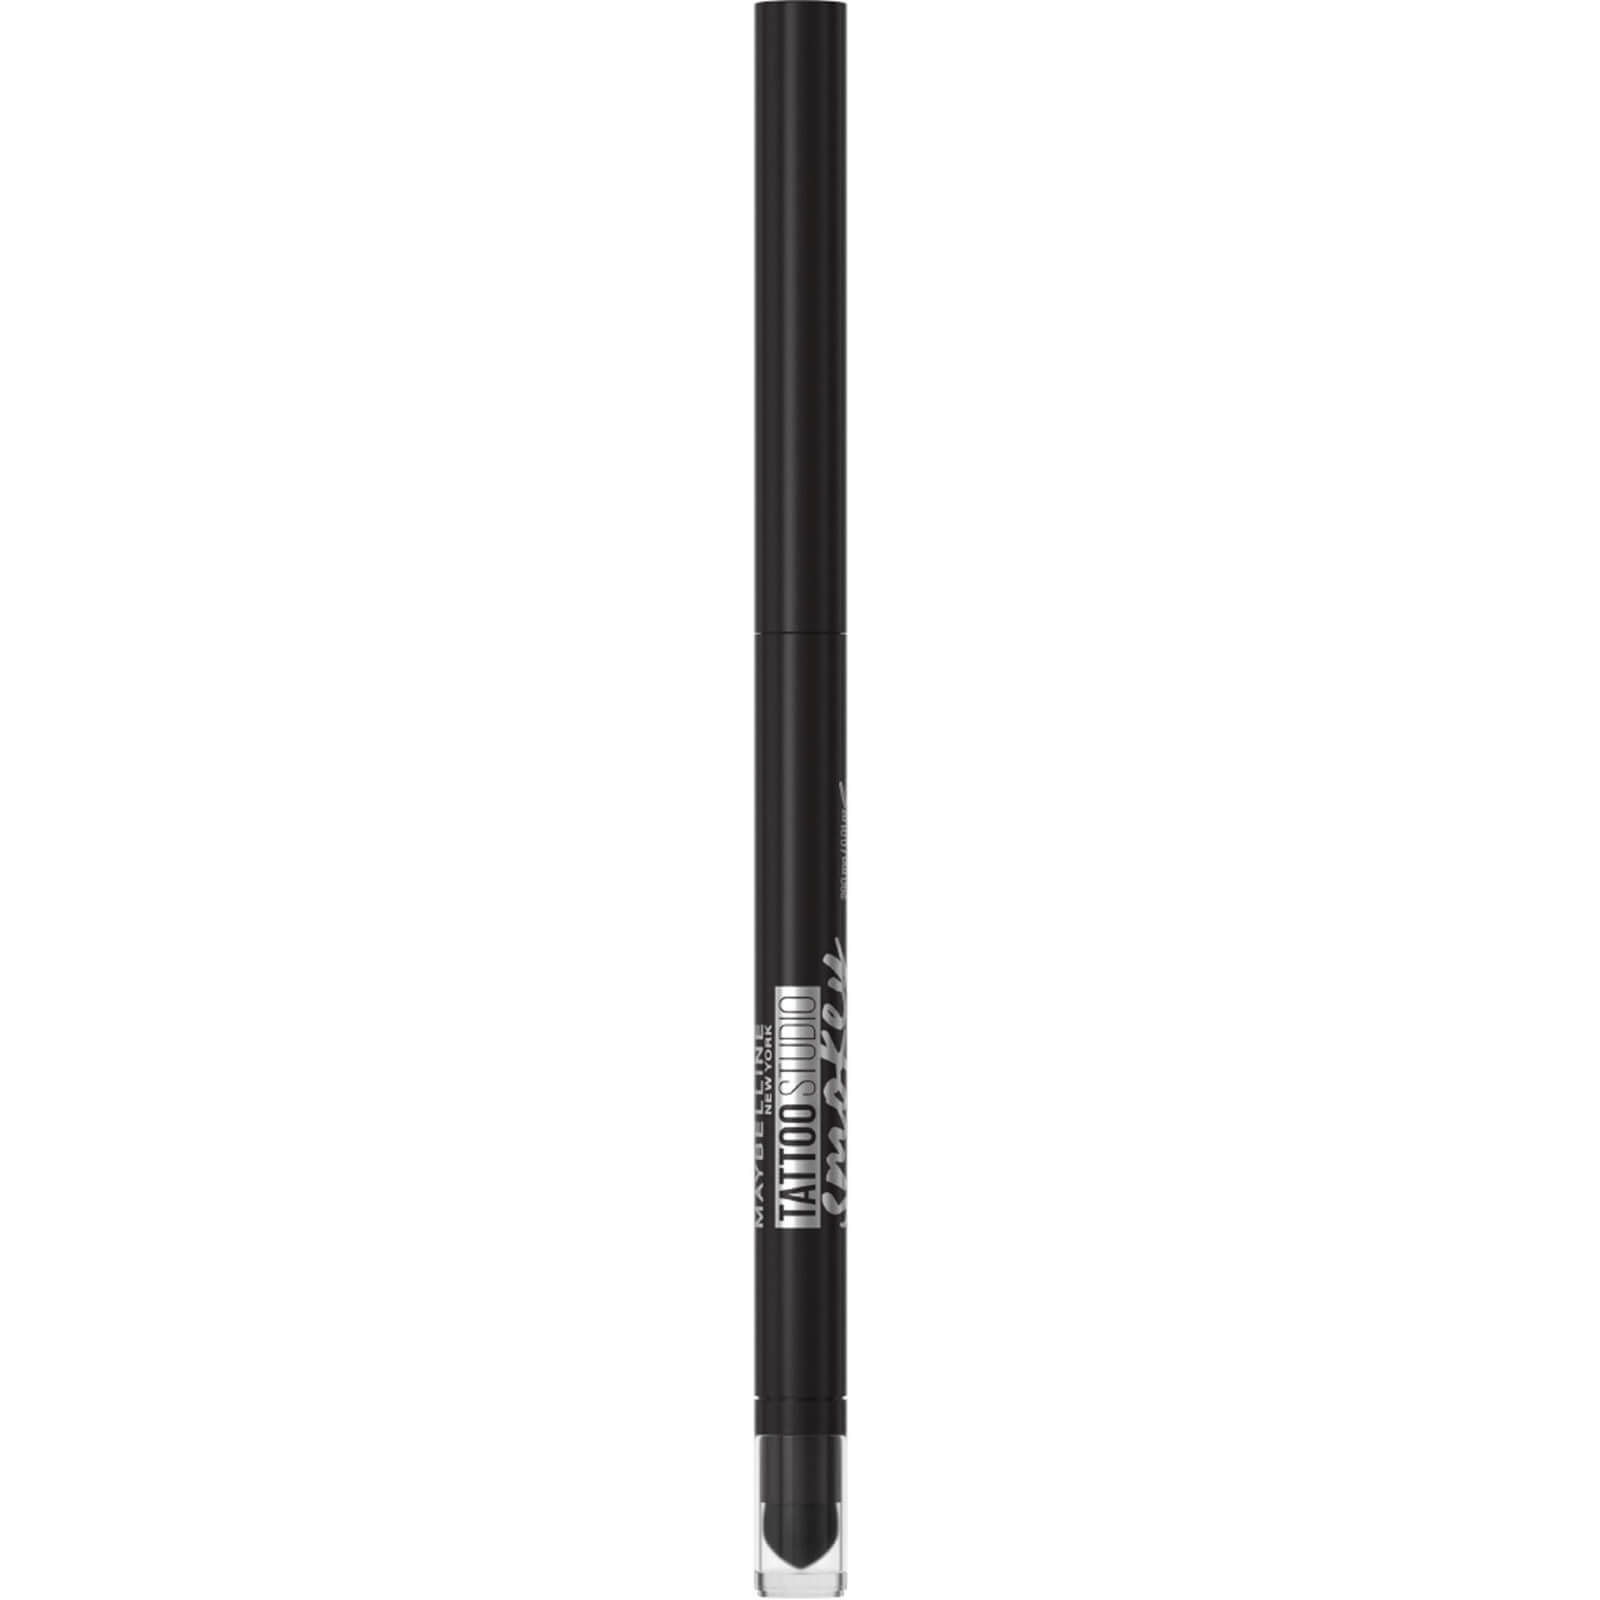 Image of Maybelline Tattoo Liner Smokey Gel Pencil Eye Liner Waterproof 5.12g (Various Shades) - 10 Smokey Black